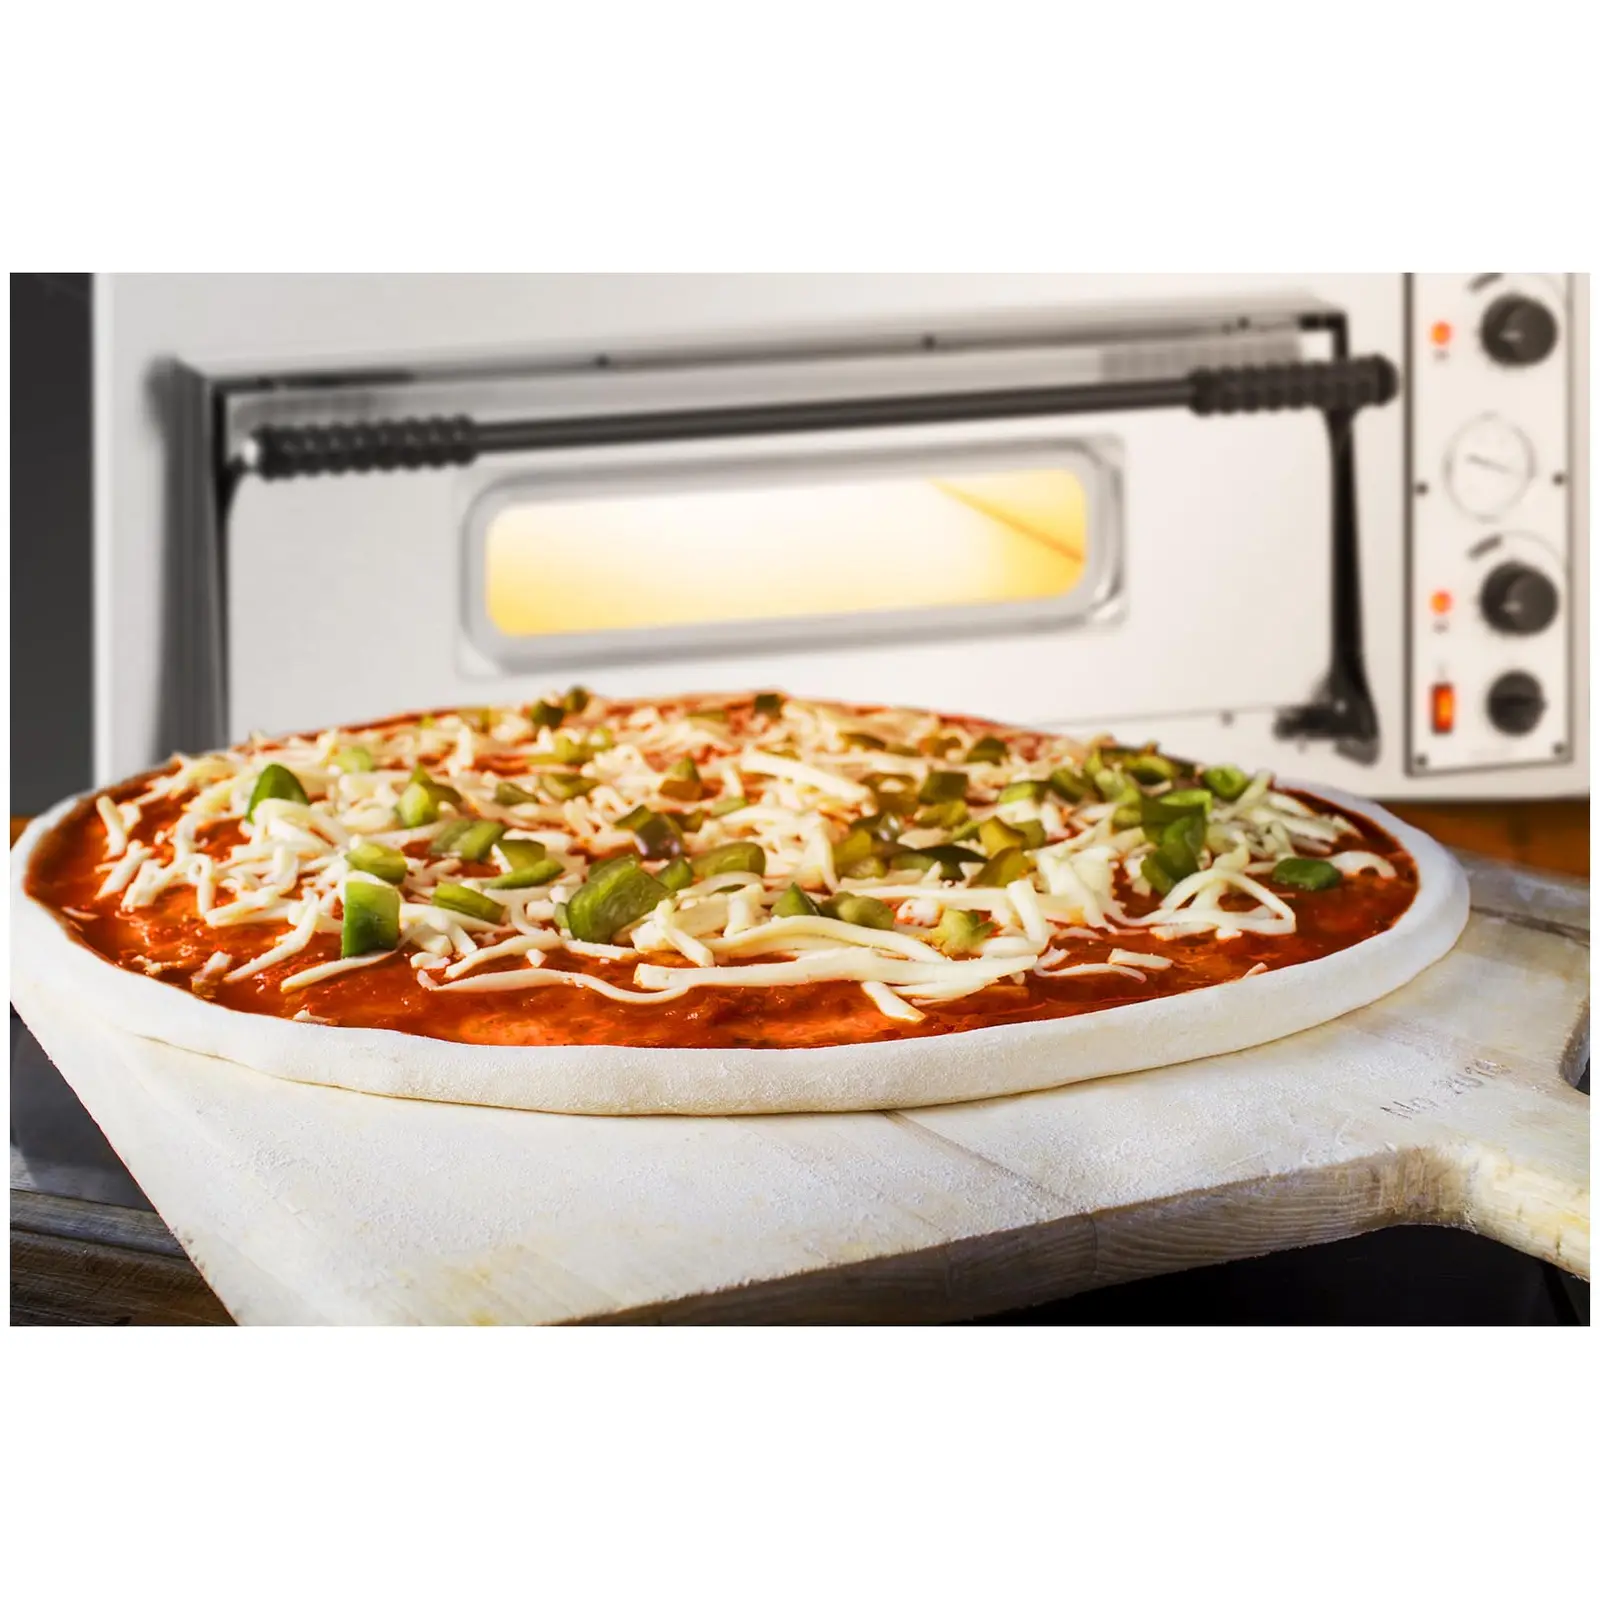 Forno elettrico per pizza professionale - 2 camere - 8 x Ø 32 cm